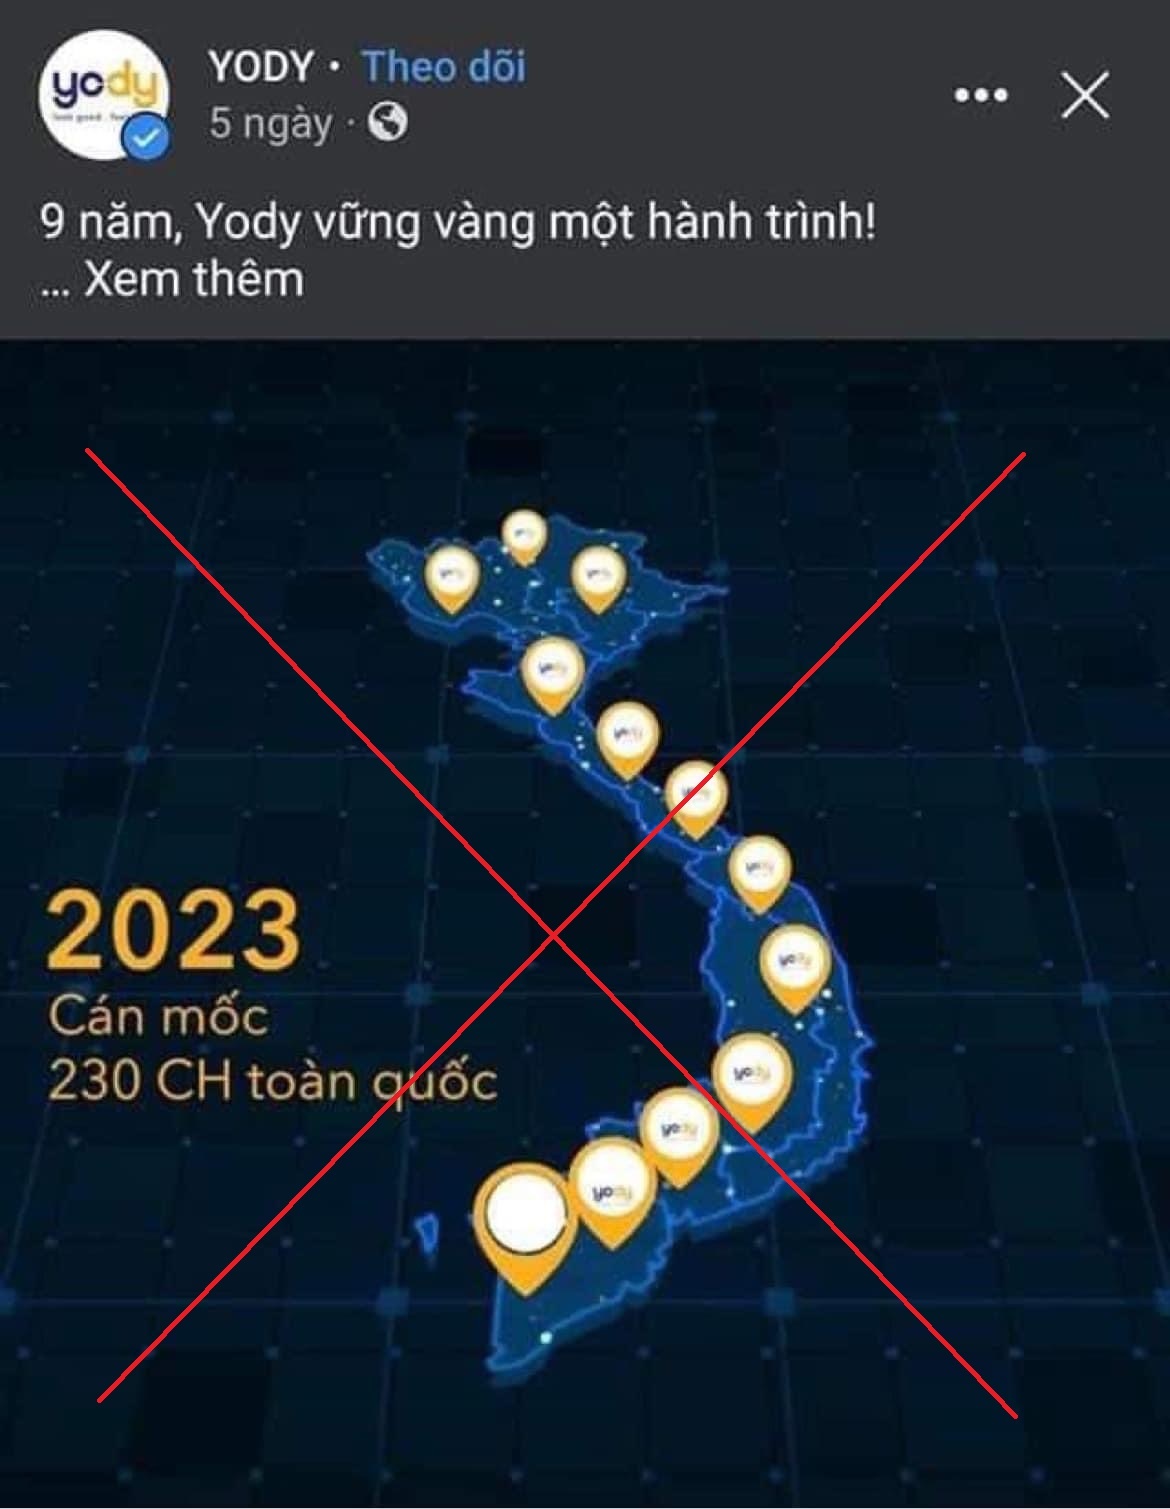 Yody bị xử phạt 15 triệu đồng vì đăng bản đồ thiếu Hoàng Sa, Trường Sa lên 53 tài khoản fanpage Facebook - Ảnh 1.